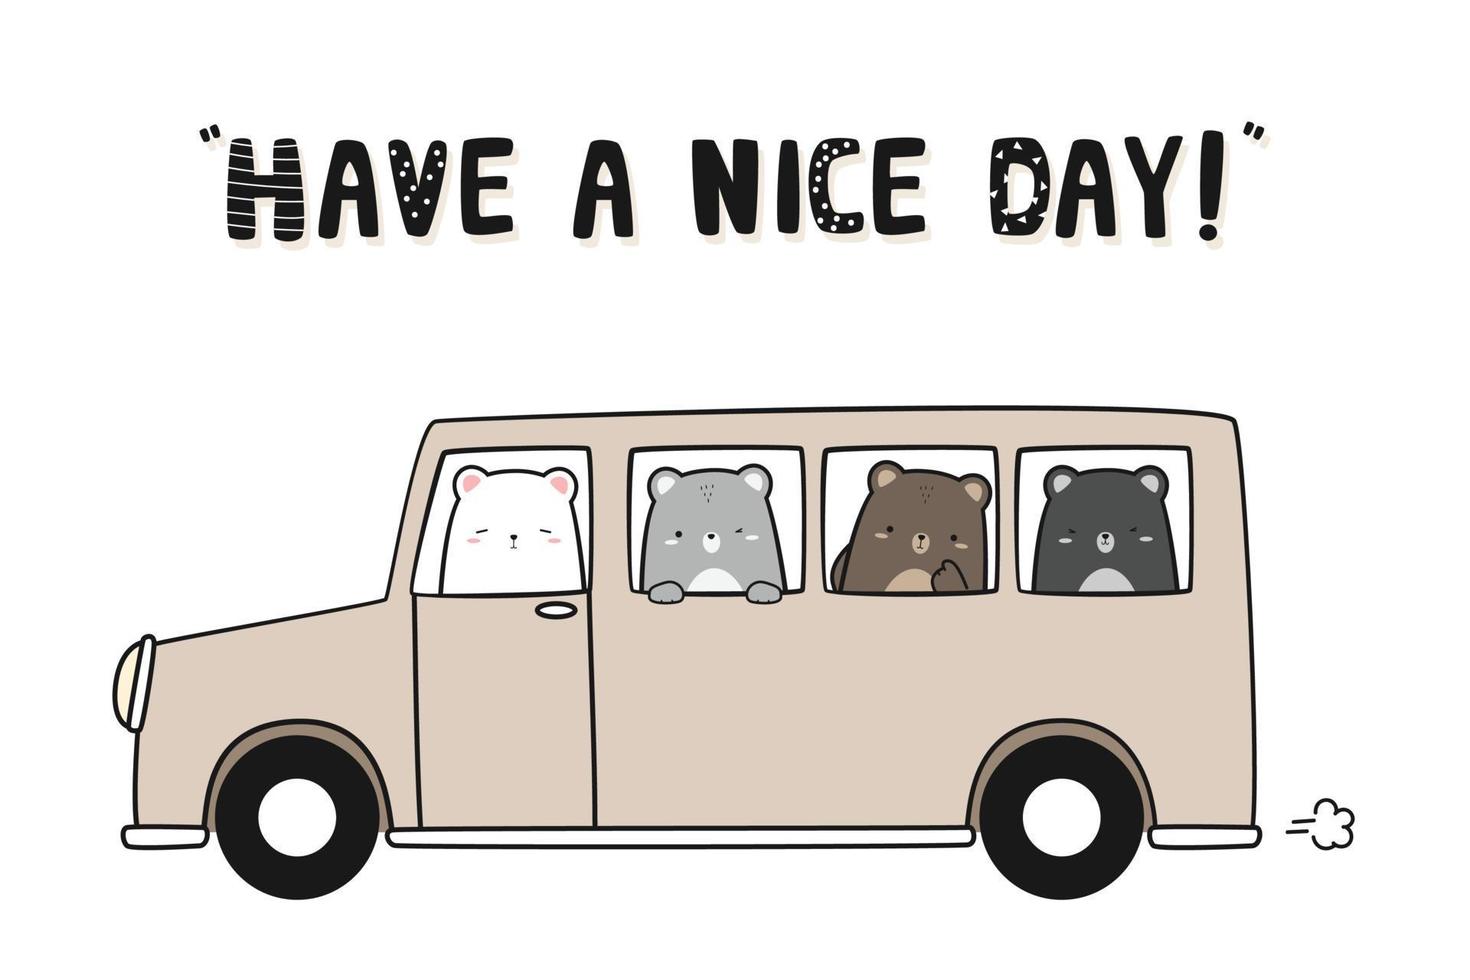 Teddy bear and polar bear driving car cartoon doodle illustration vector